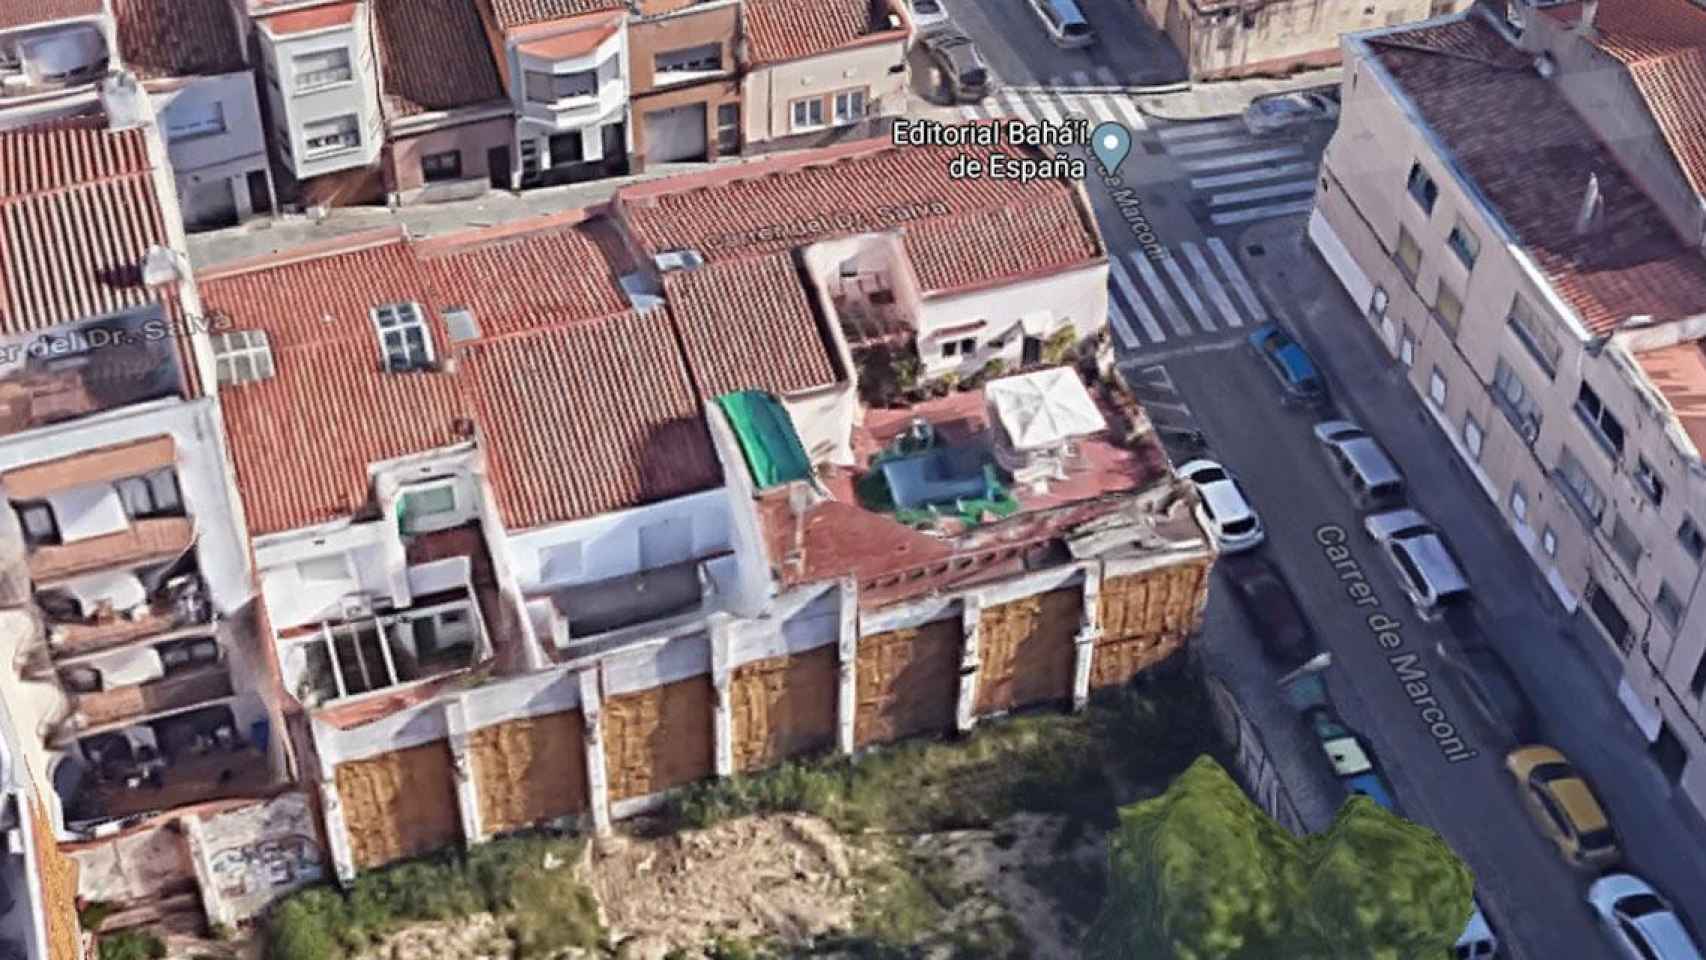 Vista de la piscina desmontable que ha hundido el techo de un edificio en Terrassa / GOOGLE MAPS